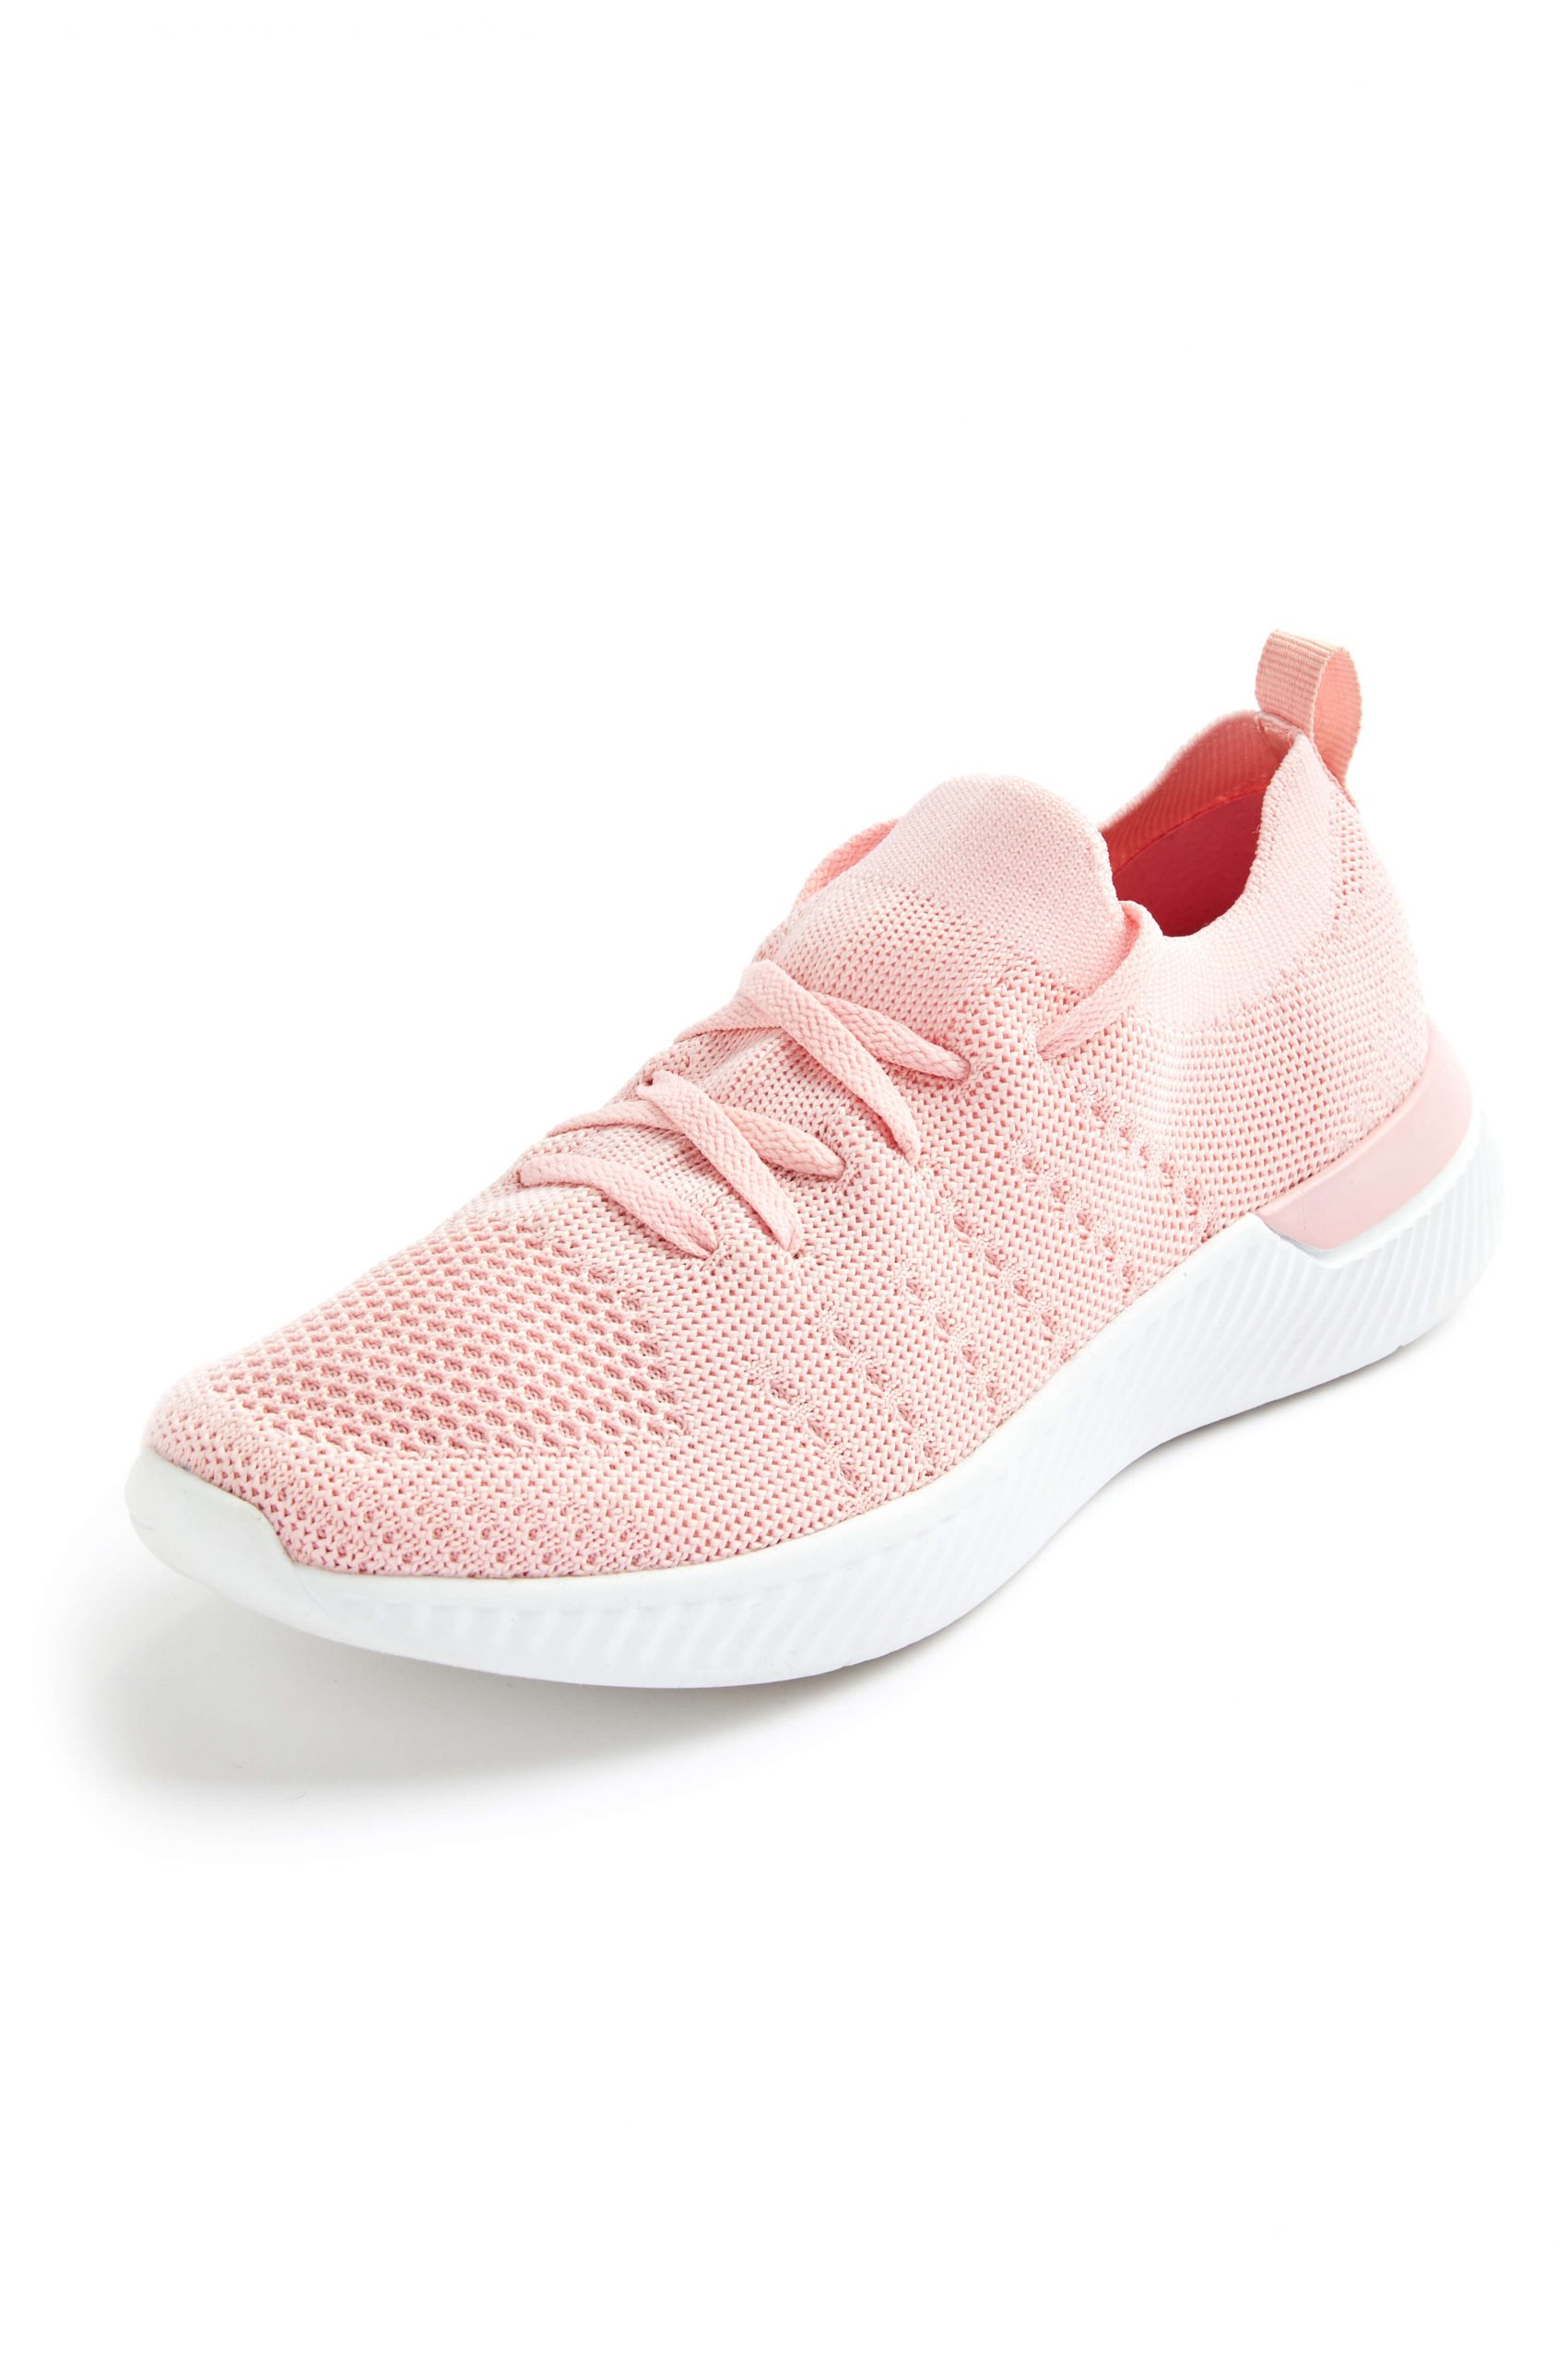 Las deportivas para mujer que serán tendencia este año - Zapatillas deportivas rosa con material reciclado 14E scaled